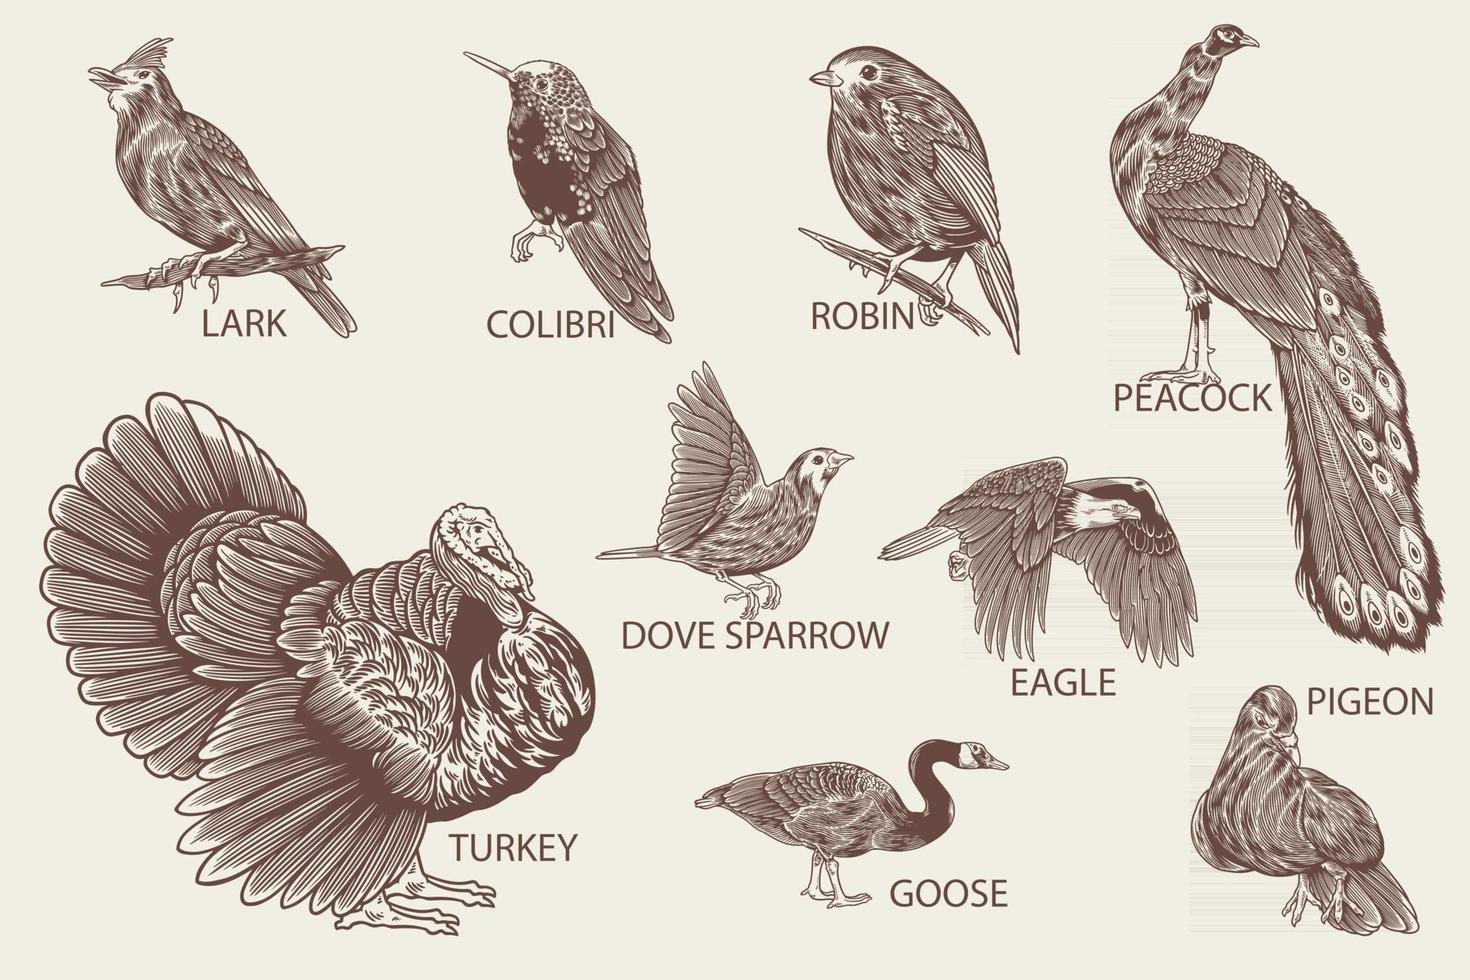 disegnato a mano di specie di uccelli in stile vintage vettore